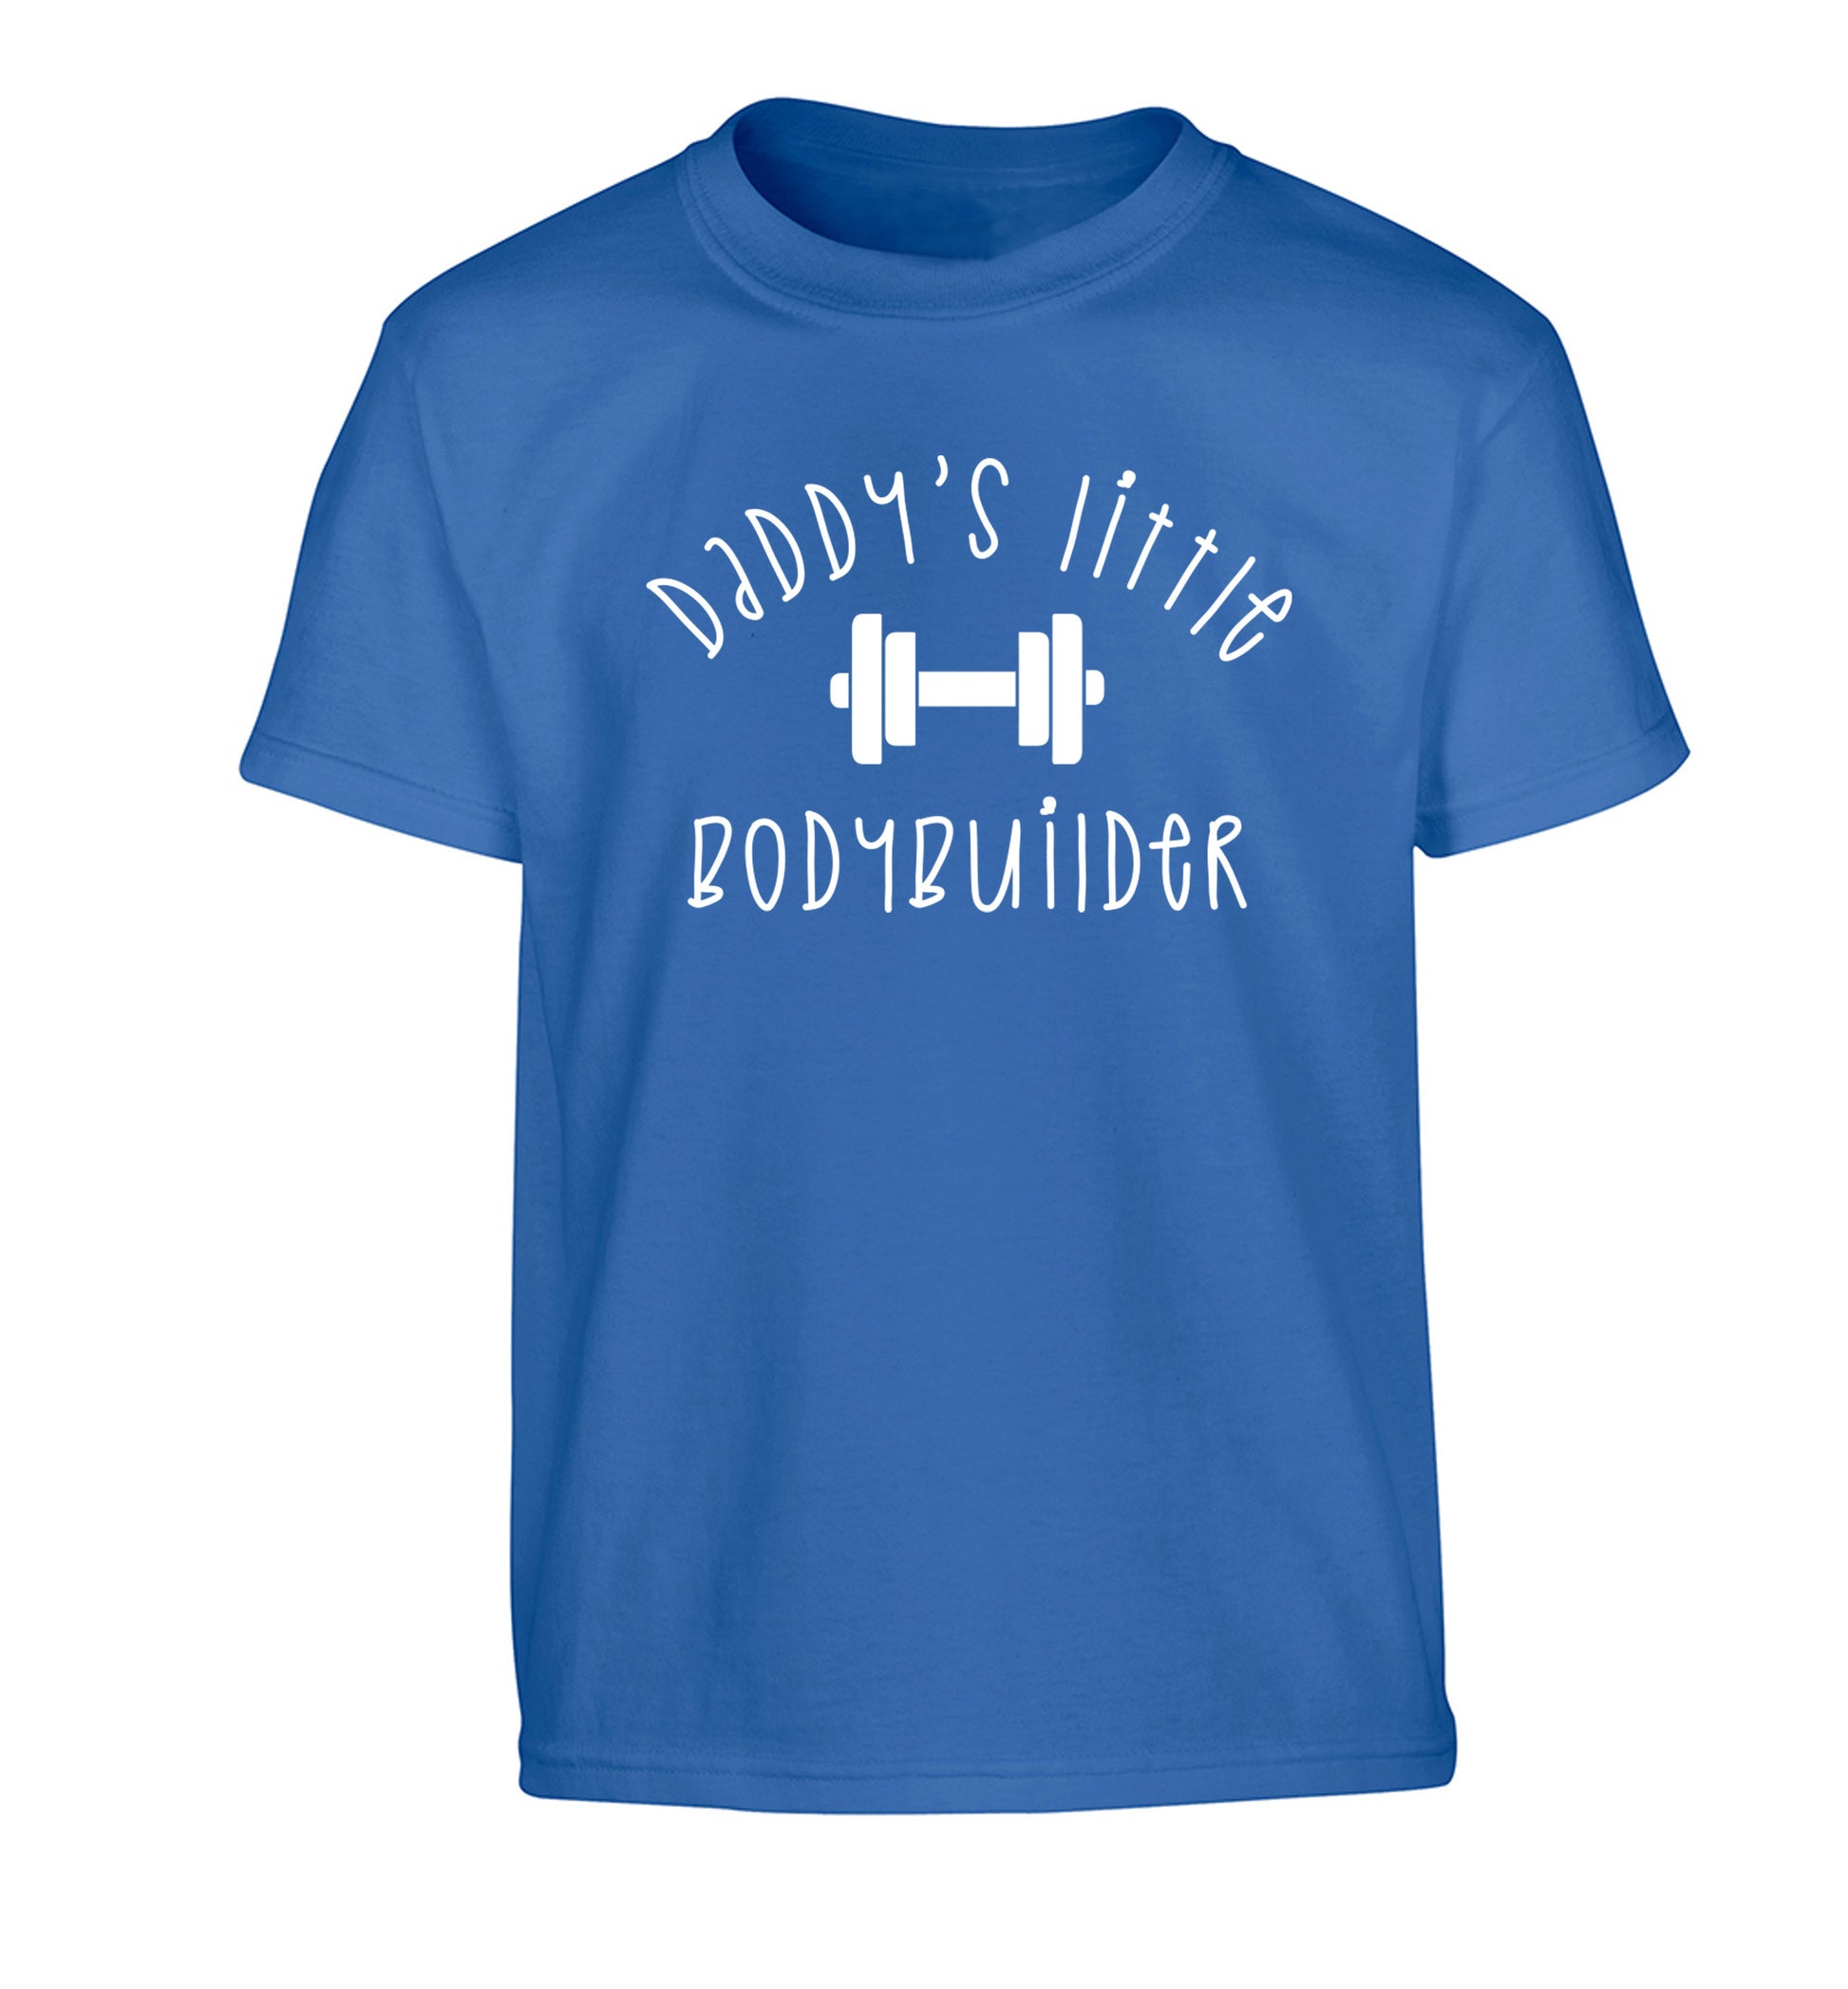 Daddy's little bodybuilder Children's blue Tshirt 12-14 Years